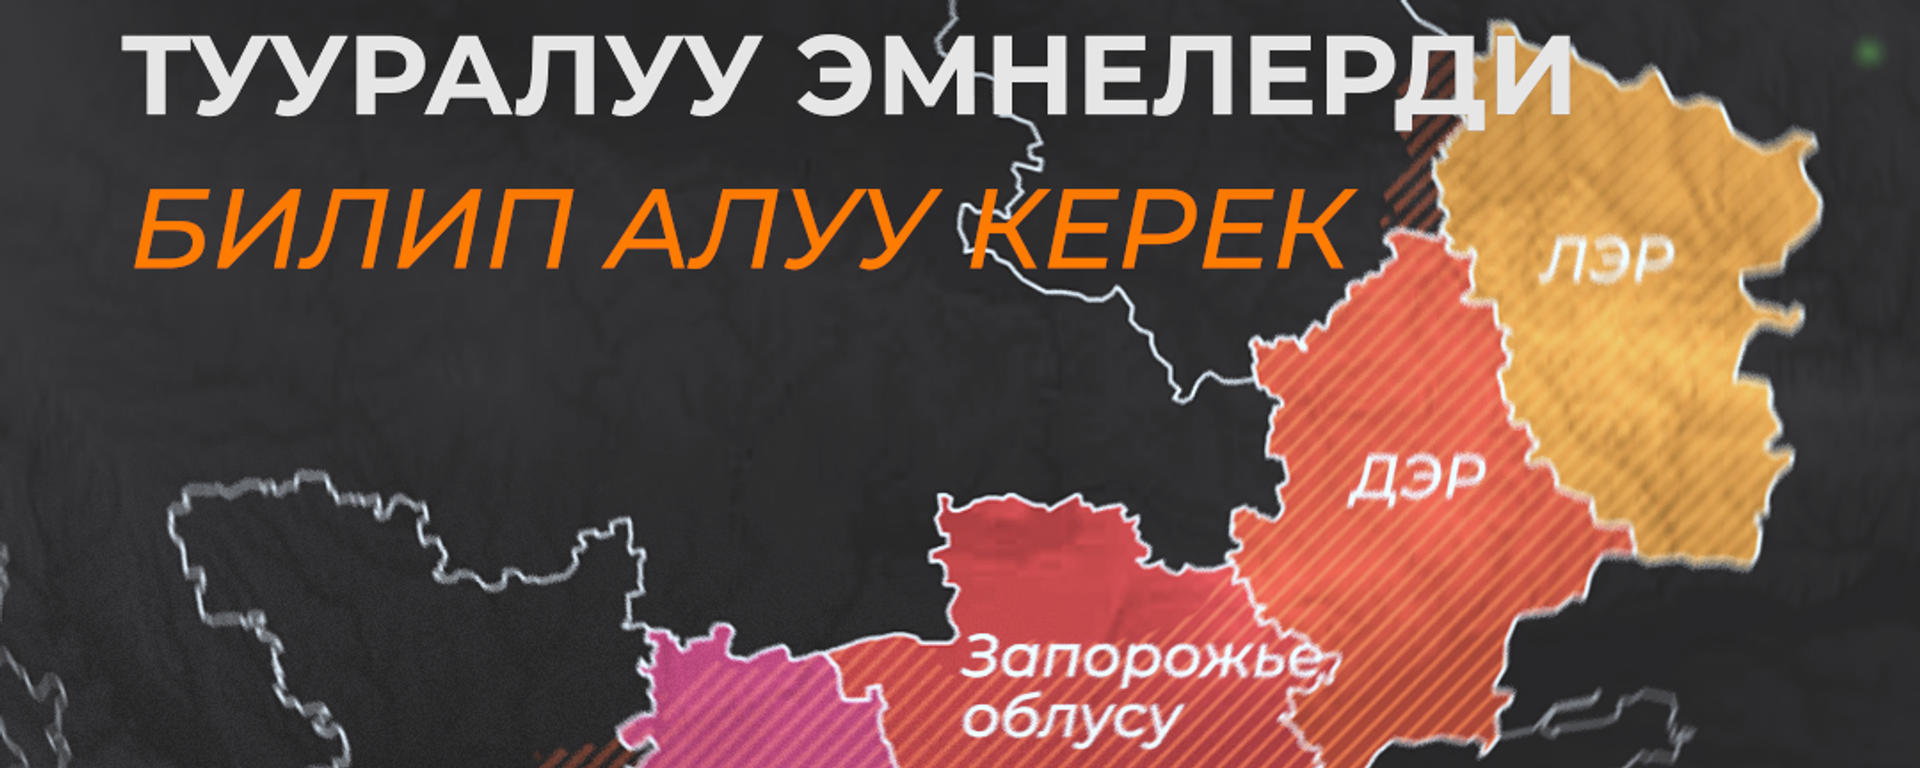 Референдум өткөн аймактар тууралуу эмне билебиз. Видеоинфографика - Sputnik Кыргызстан, 1920, 28.09.2022